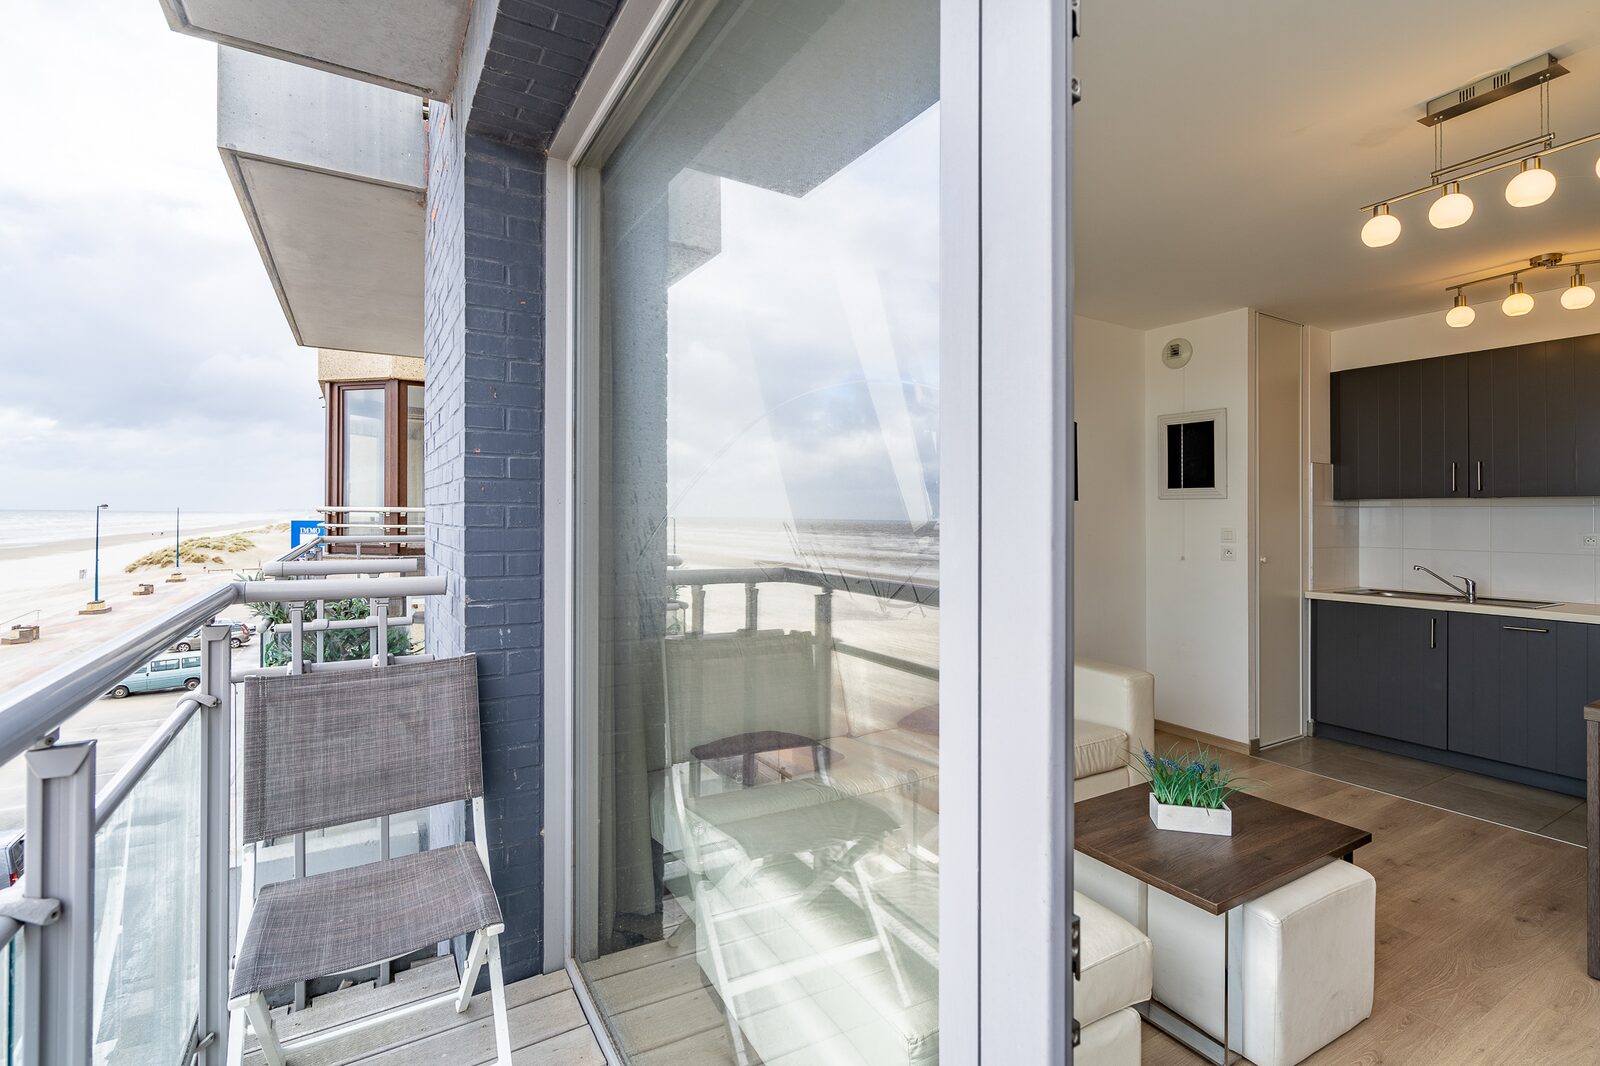 Vakantieverblijf voor 6 personen met balkon en zeezicht 